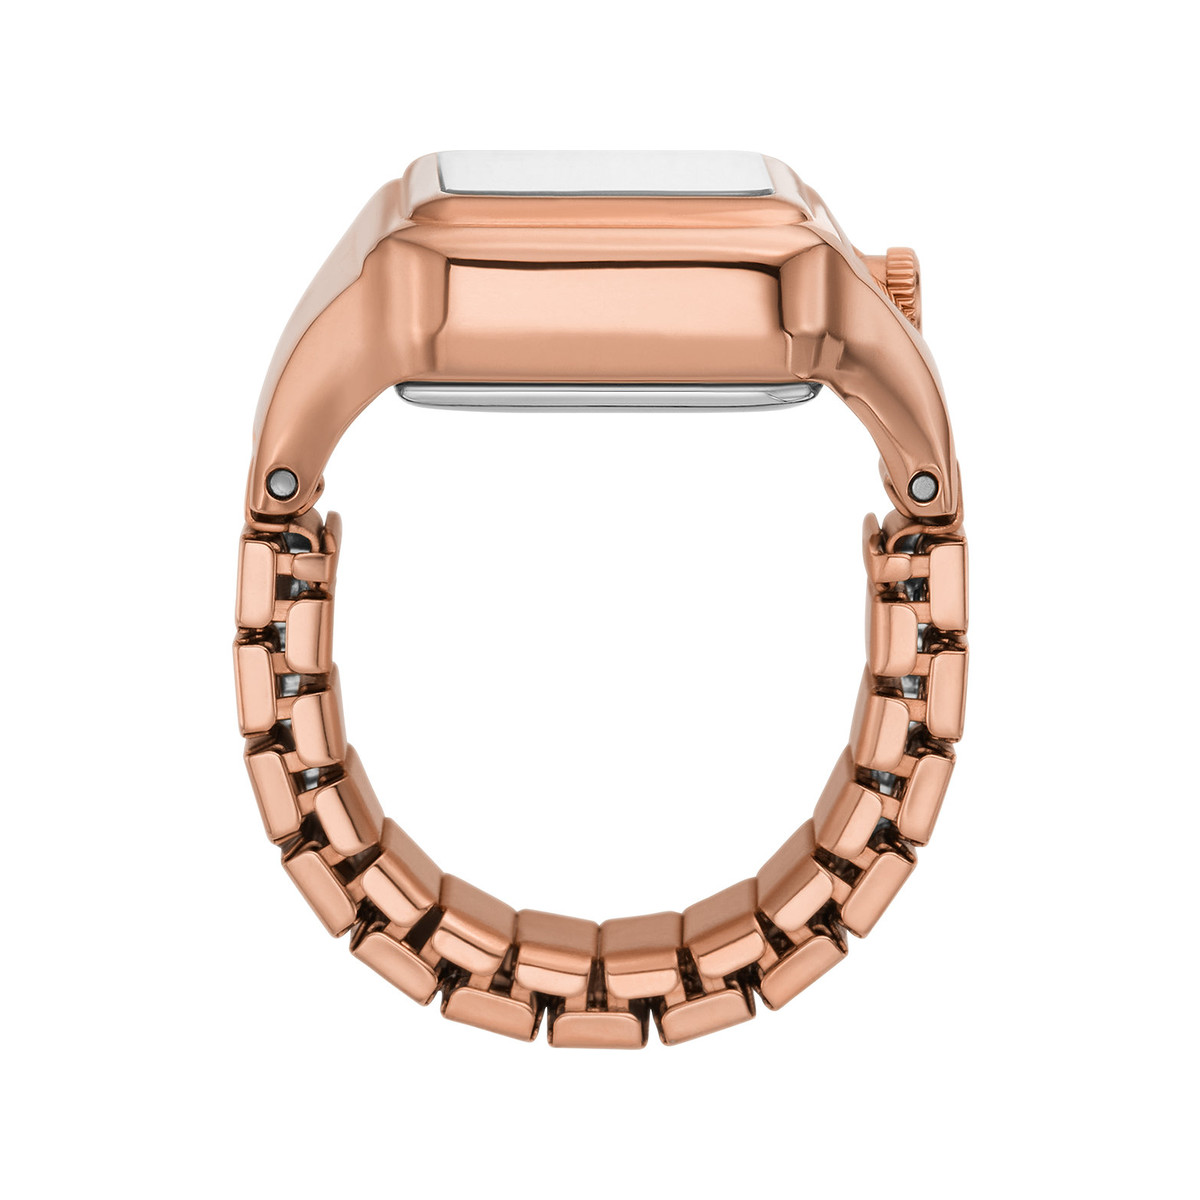 Montre FOSSIL watch ring femme bracelet acier inoxydable doré rose - vue 2